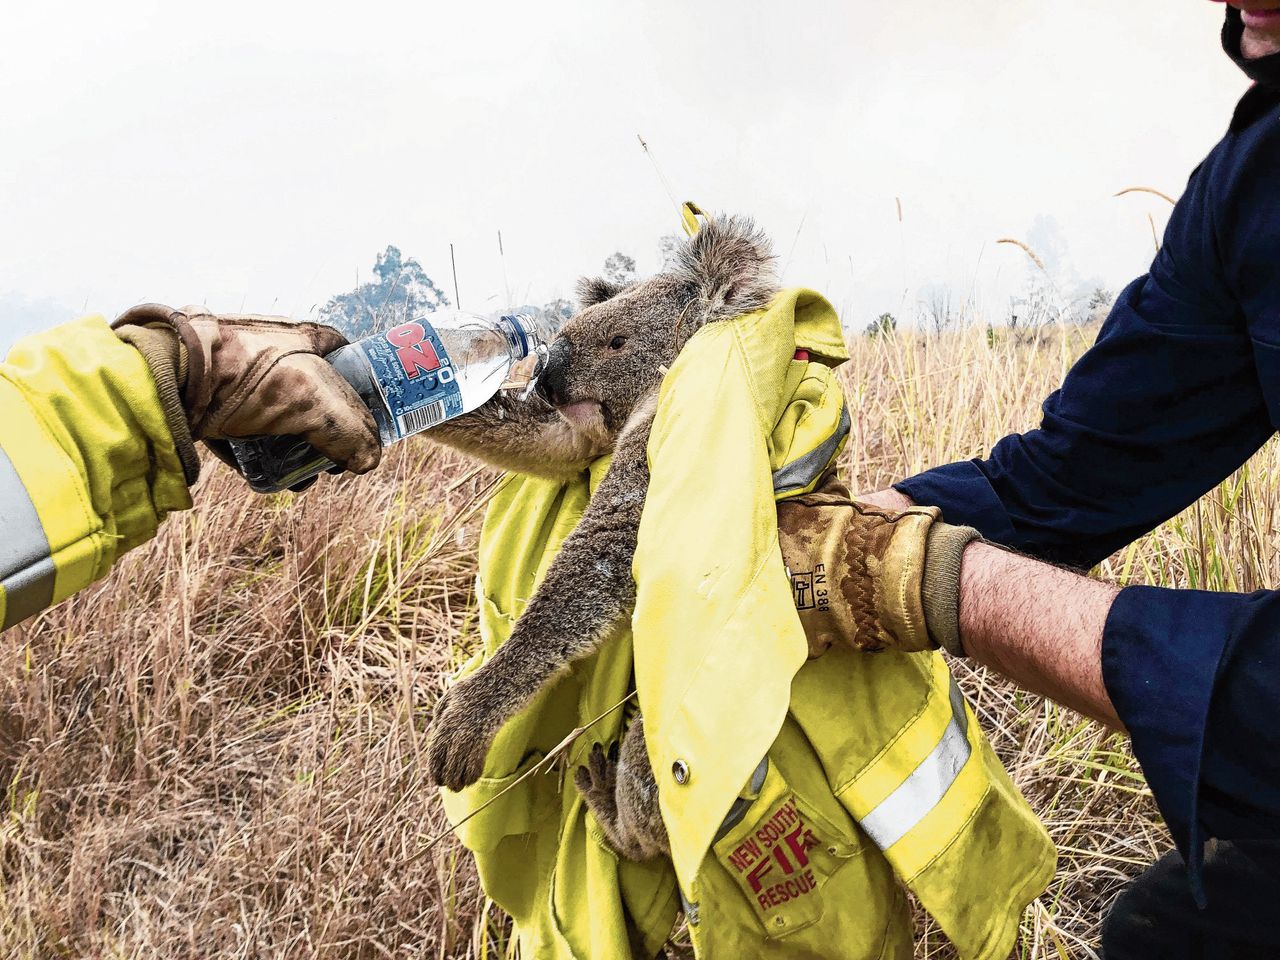 Brandweermensen geven een geredde koala water. Koala’s hebben erg te lijden onder ontbossing en bosbranden.